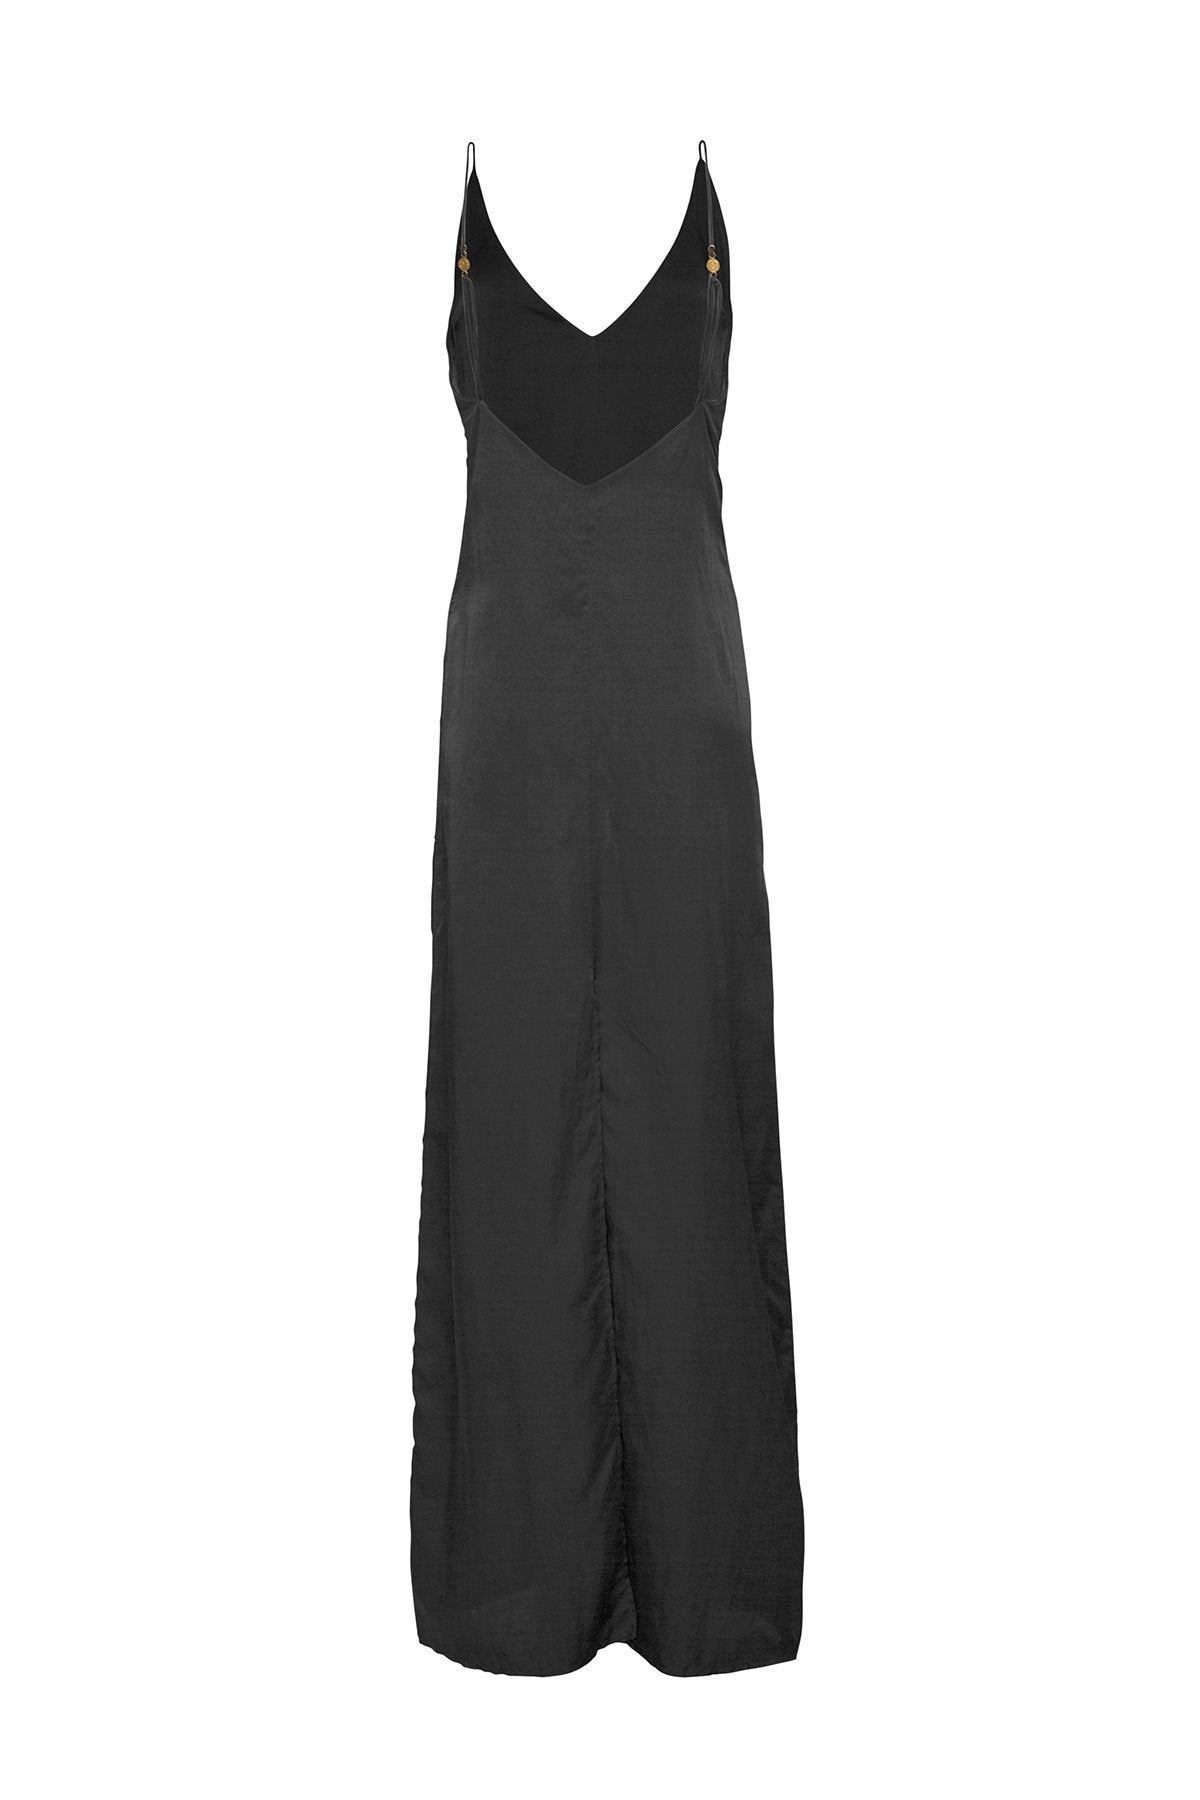 The Klimt Full Length Dress - Ebony - LOOMES